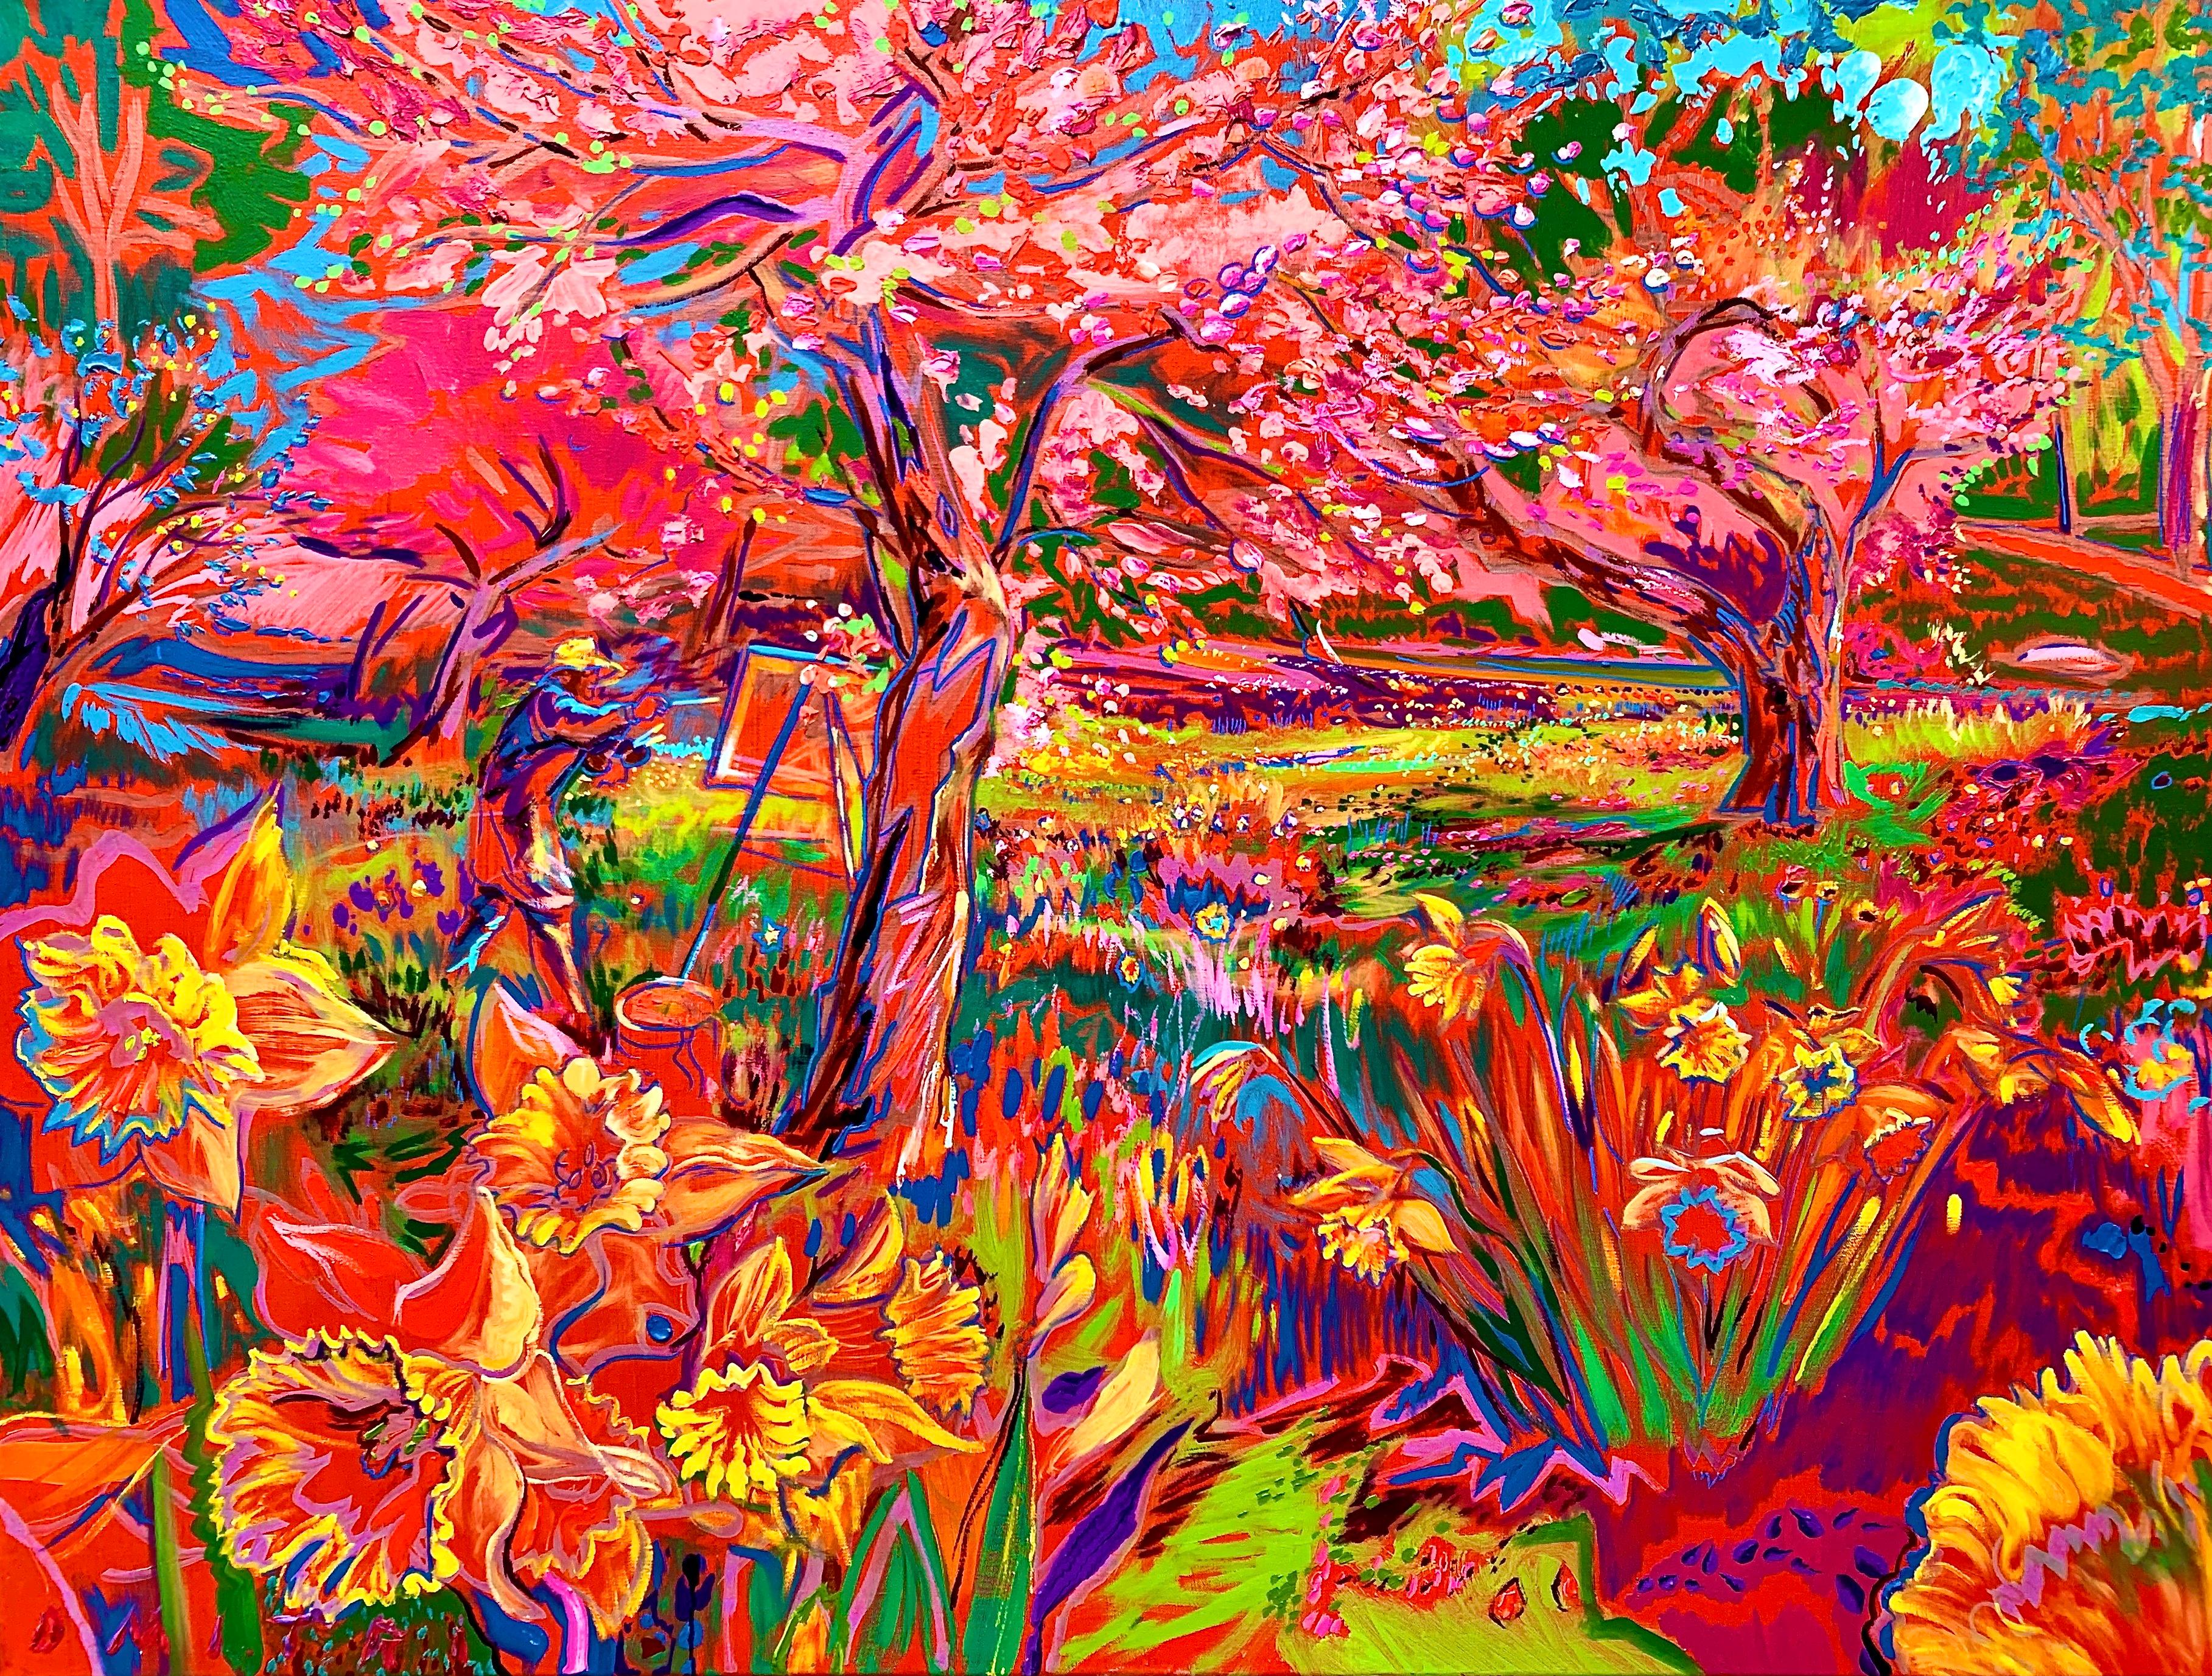 Dmitri Wright - Daffodils Bursting, Painting 2021